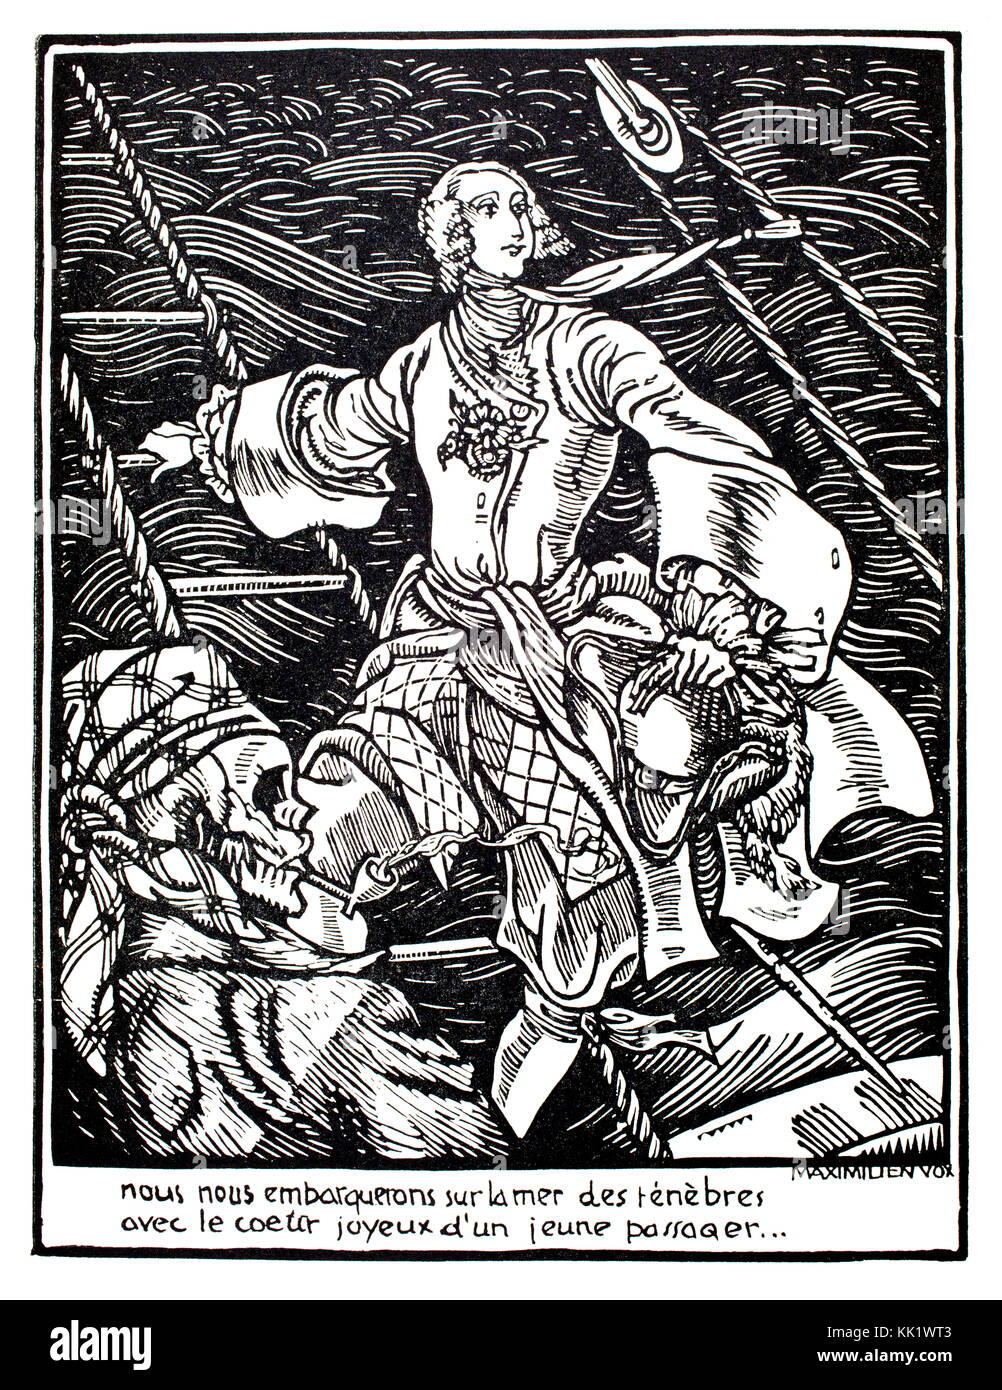 Pirat, 1920 Holzschnitt Abbildung des französischen Künstlers Maximillien Vox Stockfoto